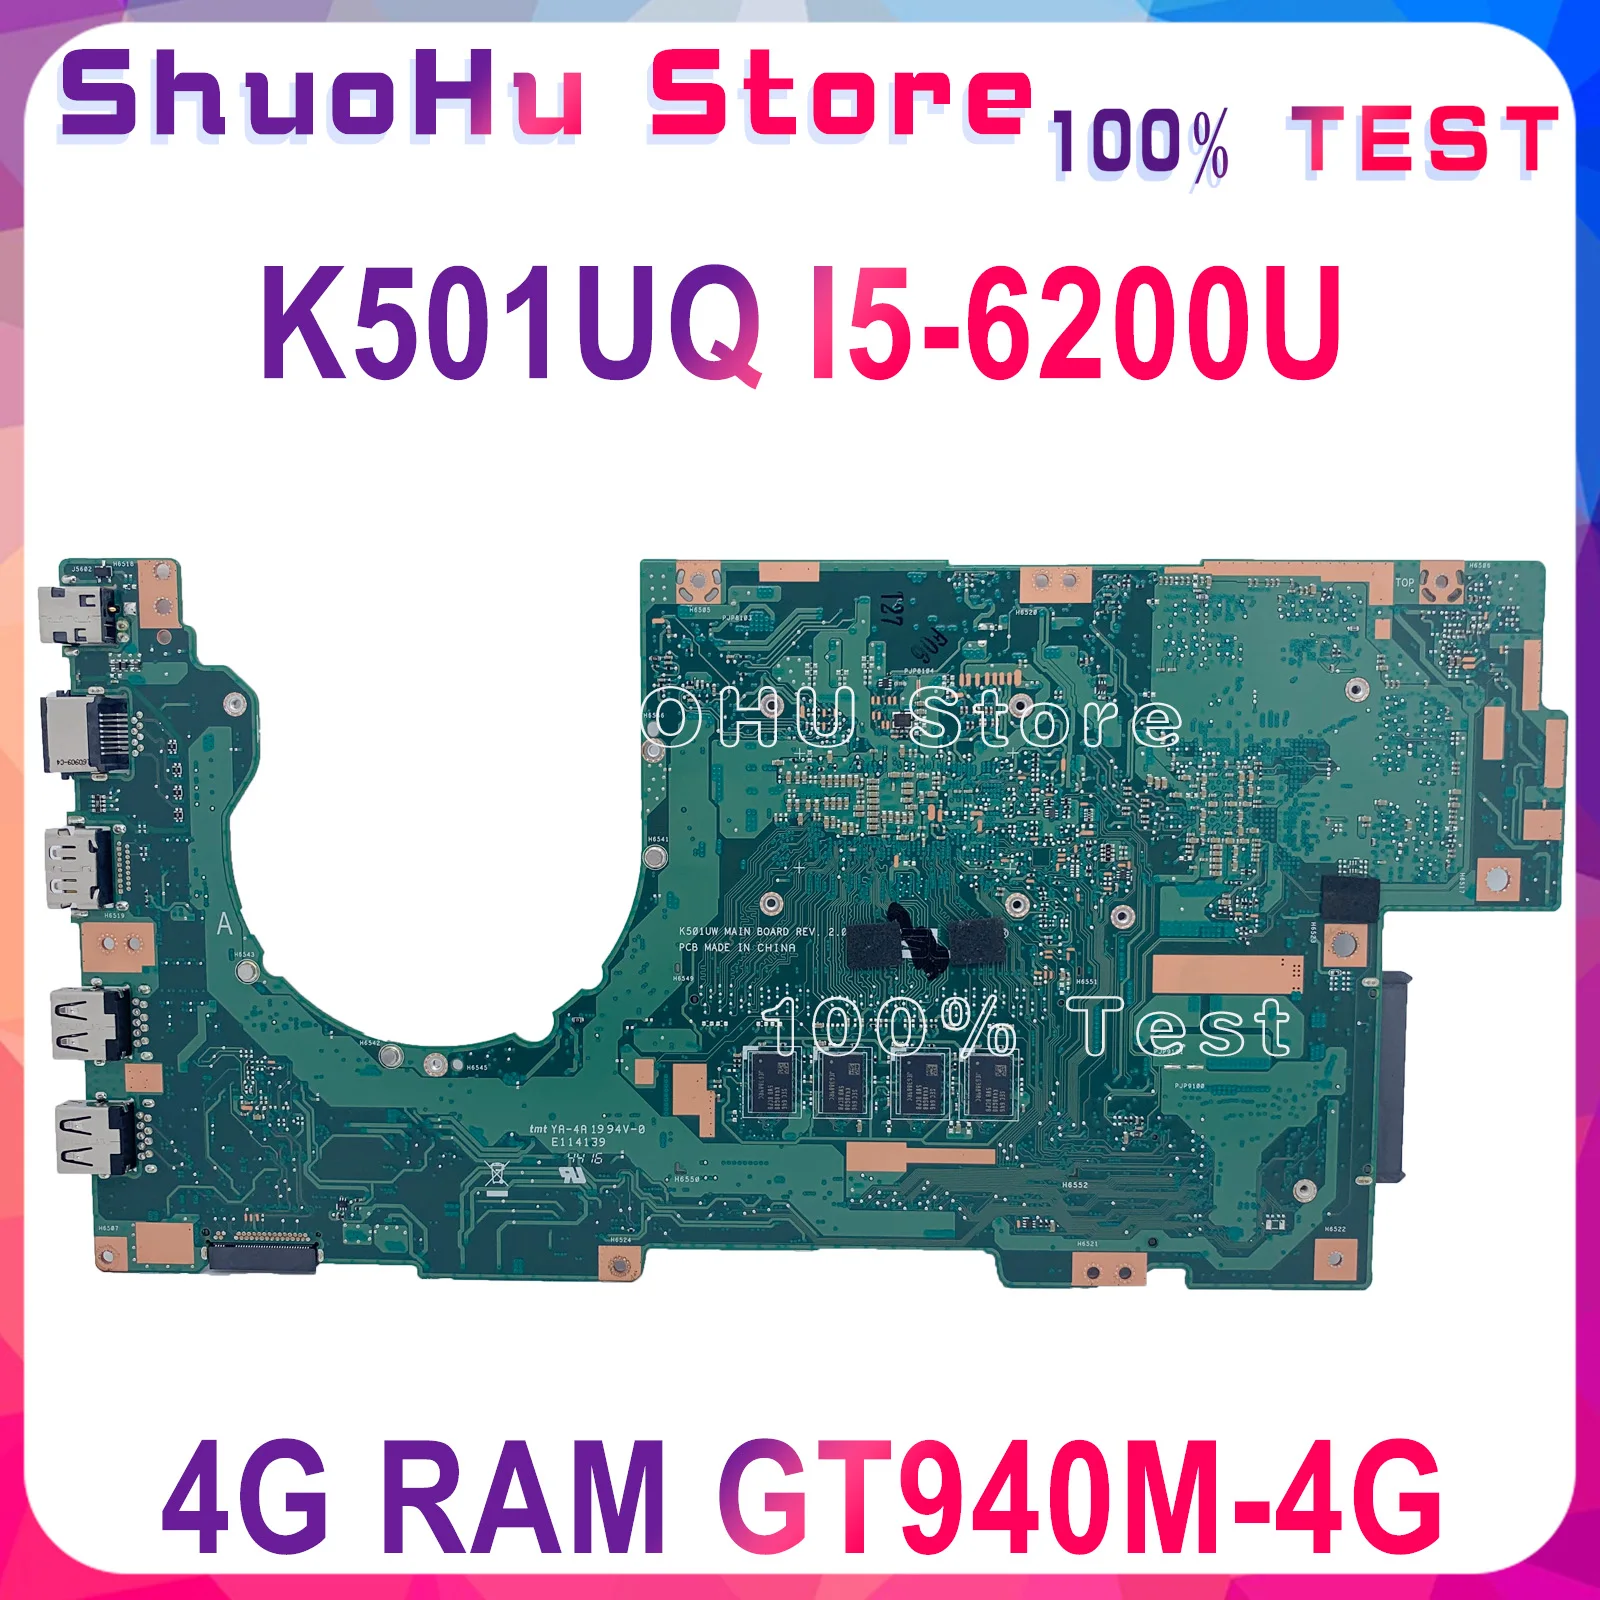 KEFU K501UQ For ASUS K501UQ K501UW K501U K501UW K501UQ A501UB Laptop Bundkort Testet GTX940M-4G-I5-6200U oprindelige arbejde